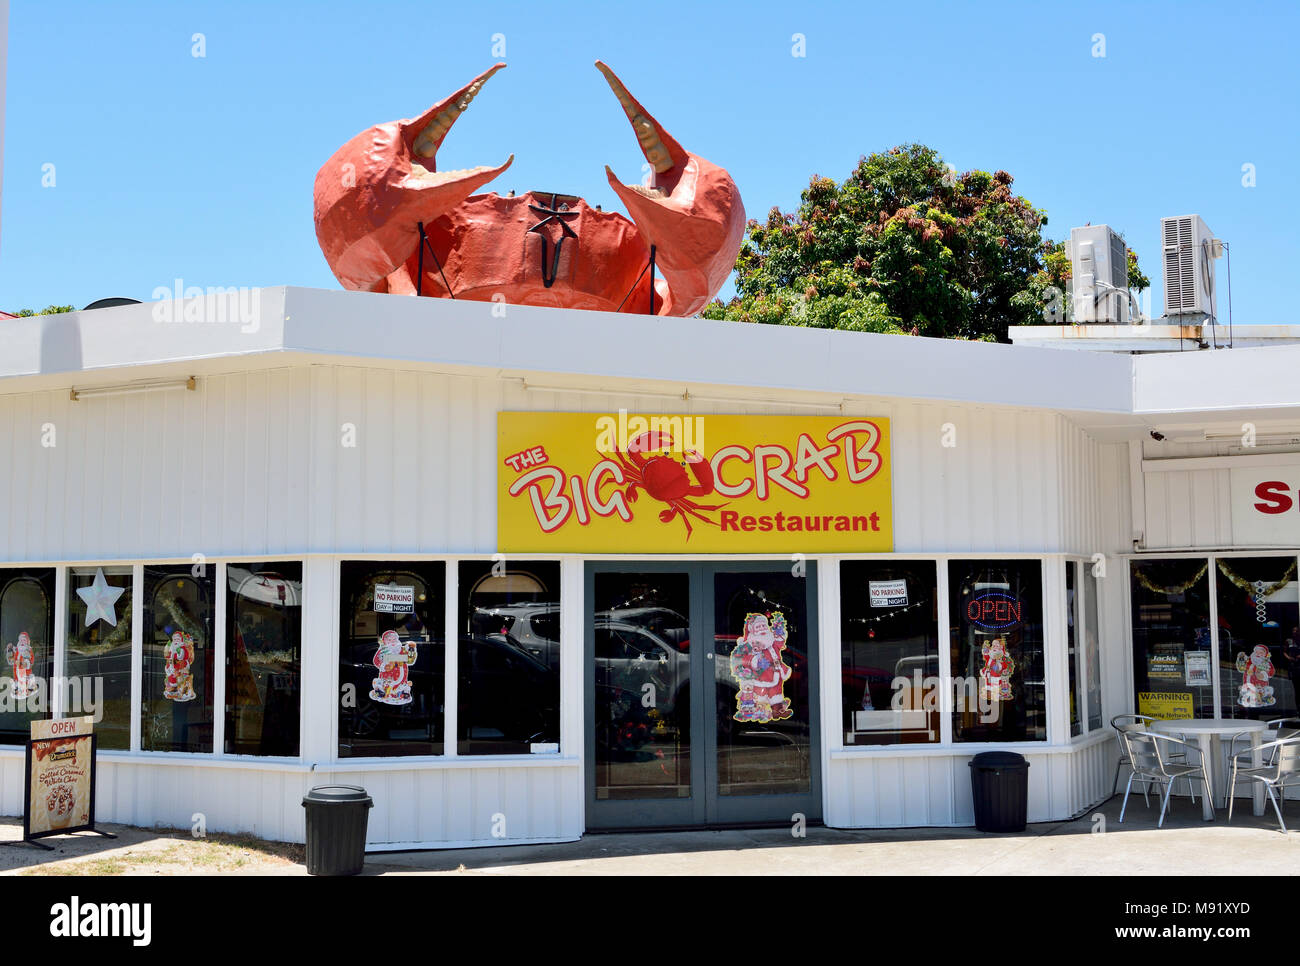 Miriam Vale, Queensland, Australien - 17. Dezember 2017. Die großen Crab Restaurant in Miriam Vale, mit den grossen Krabbe Struktur auf dem Dach. Stockfoto